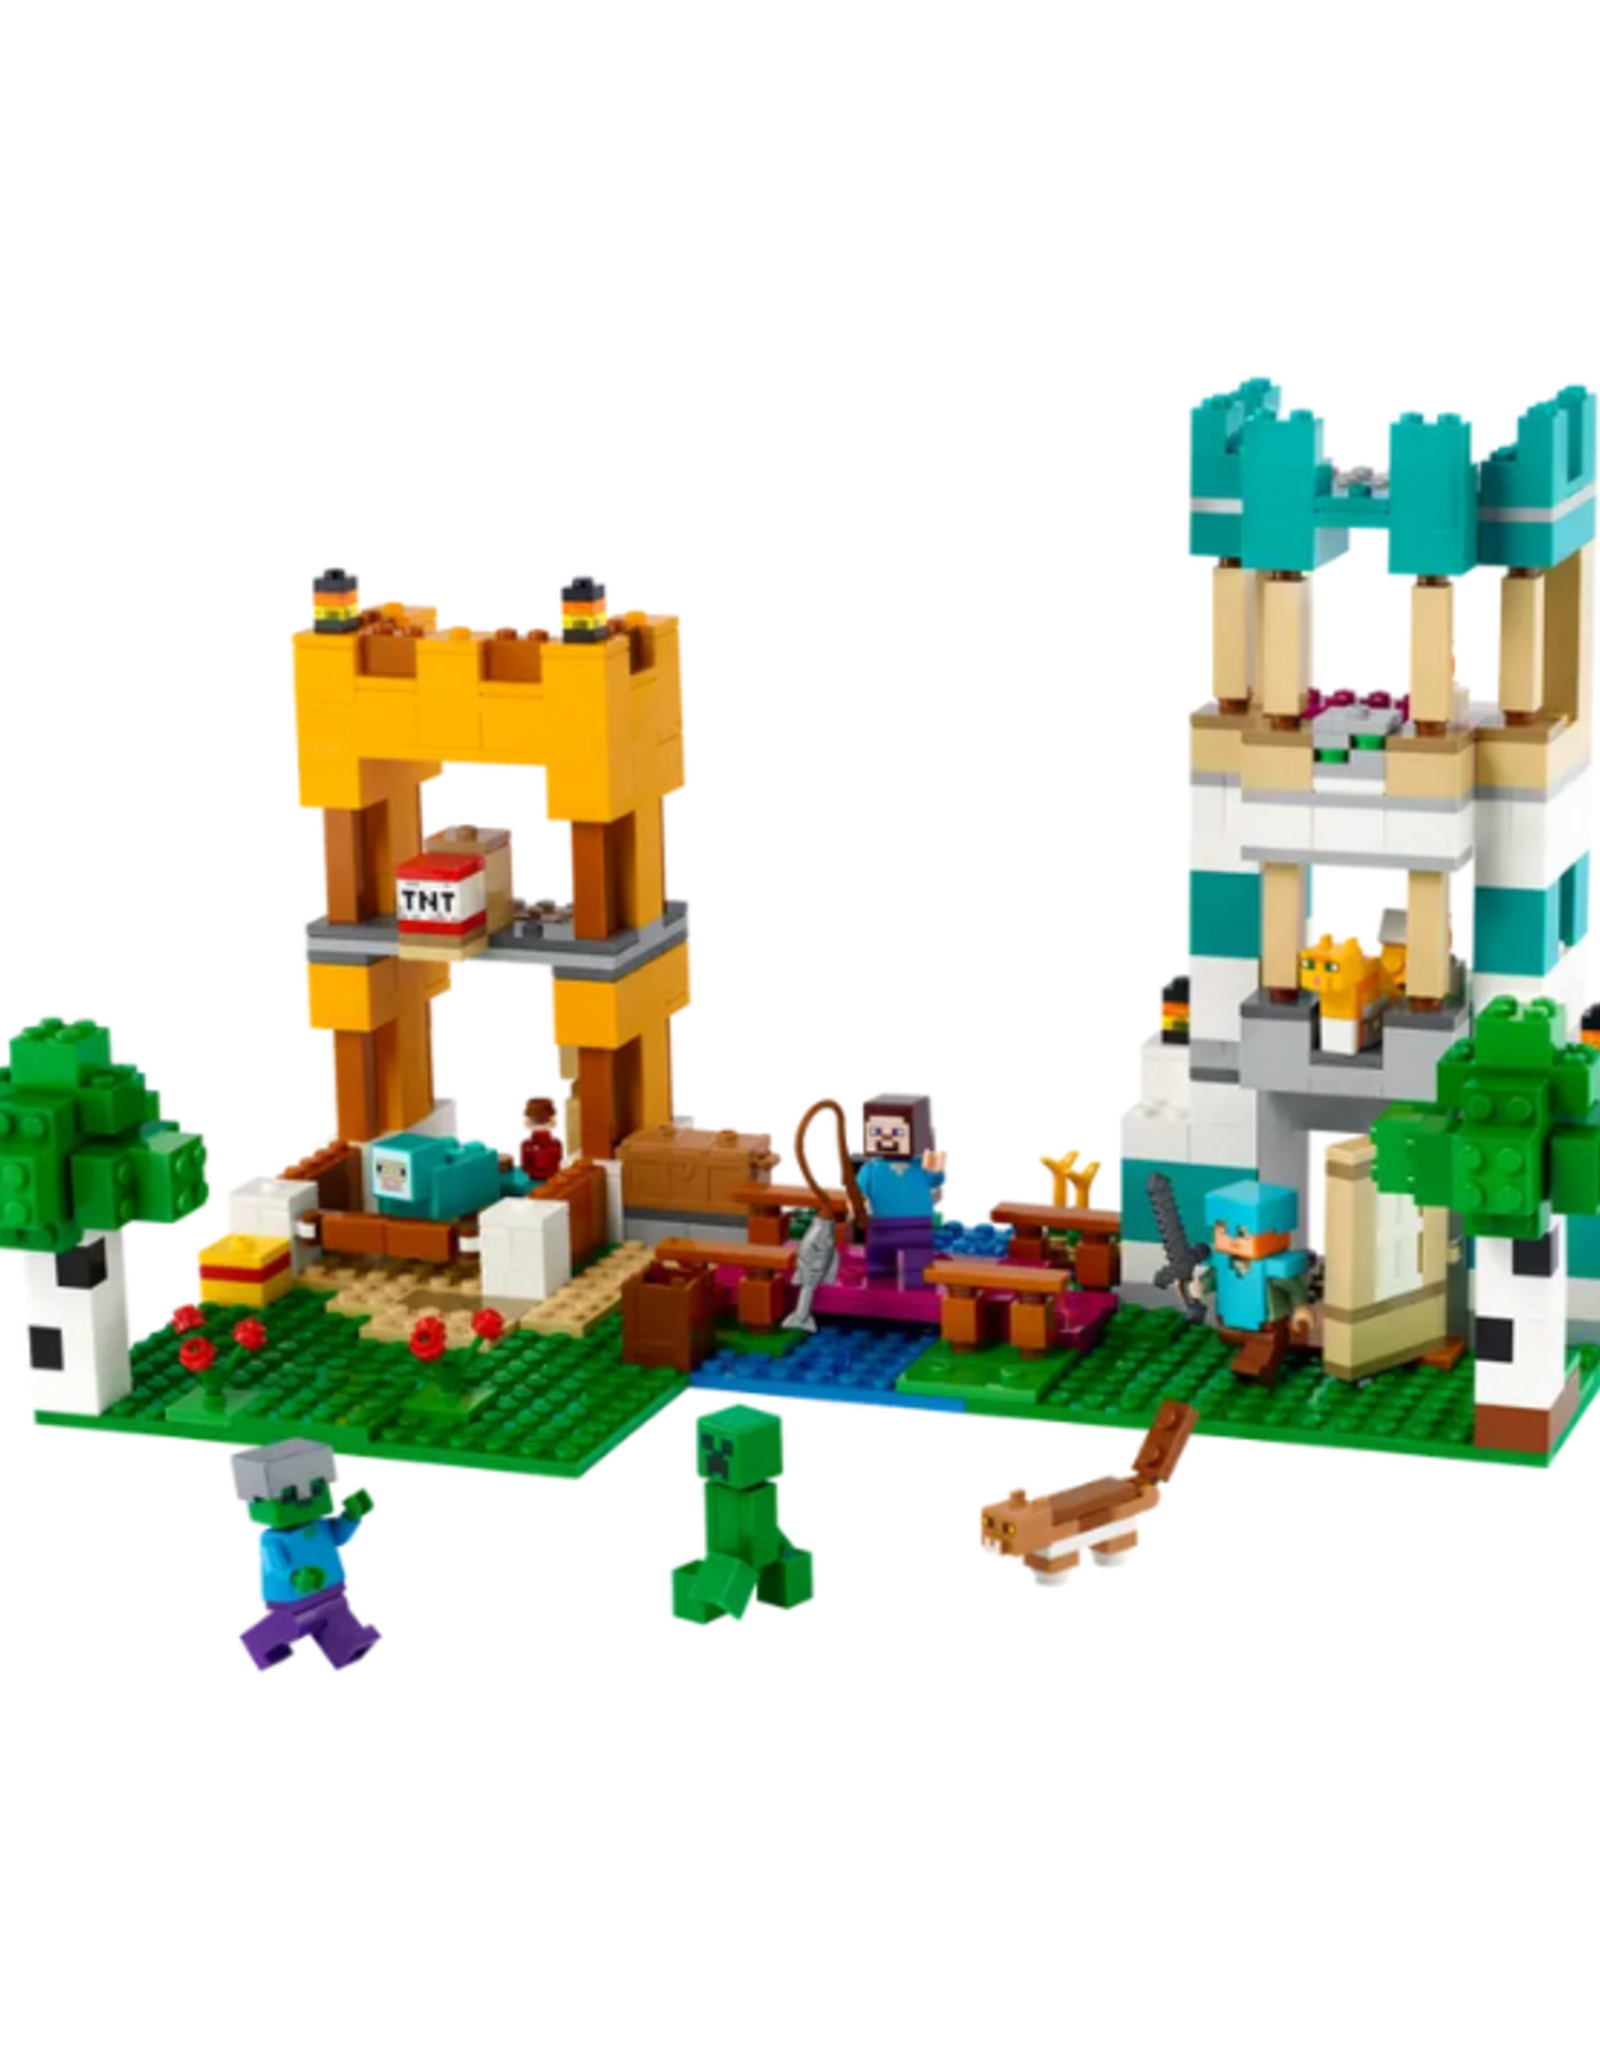 Lego Lego - Minecraft - 21249 - The Crafting Box 4.0